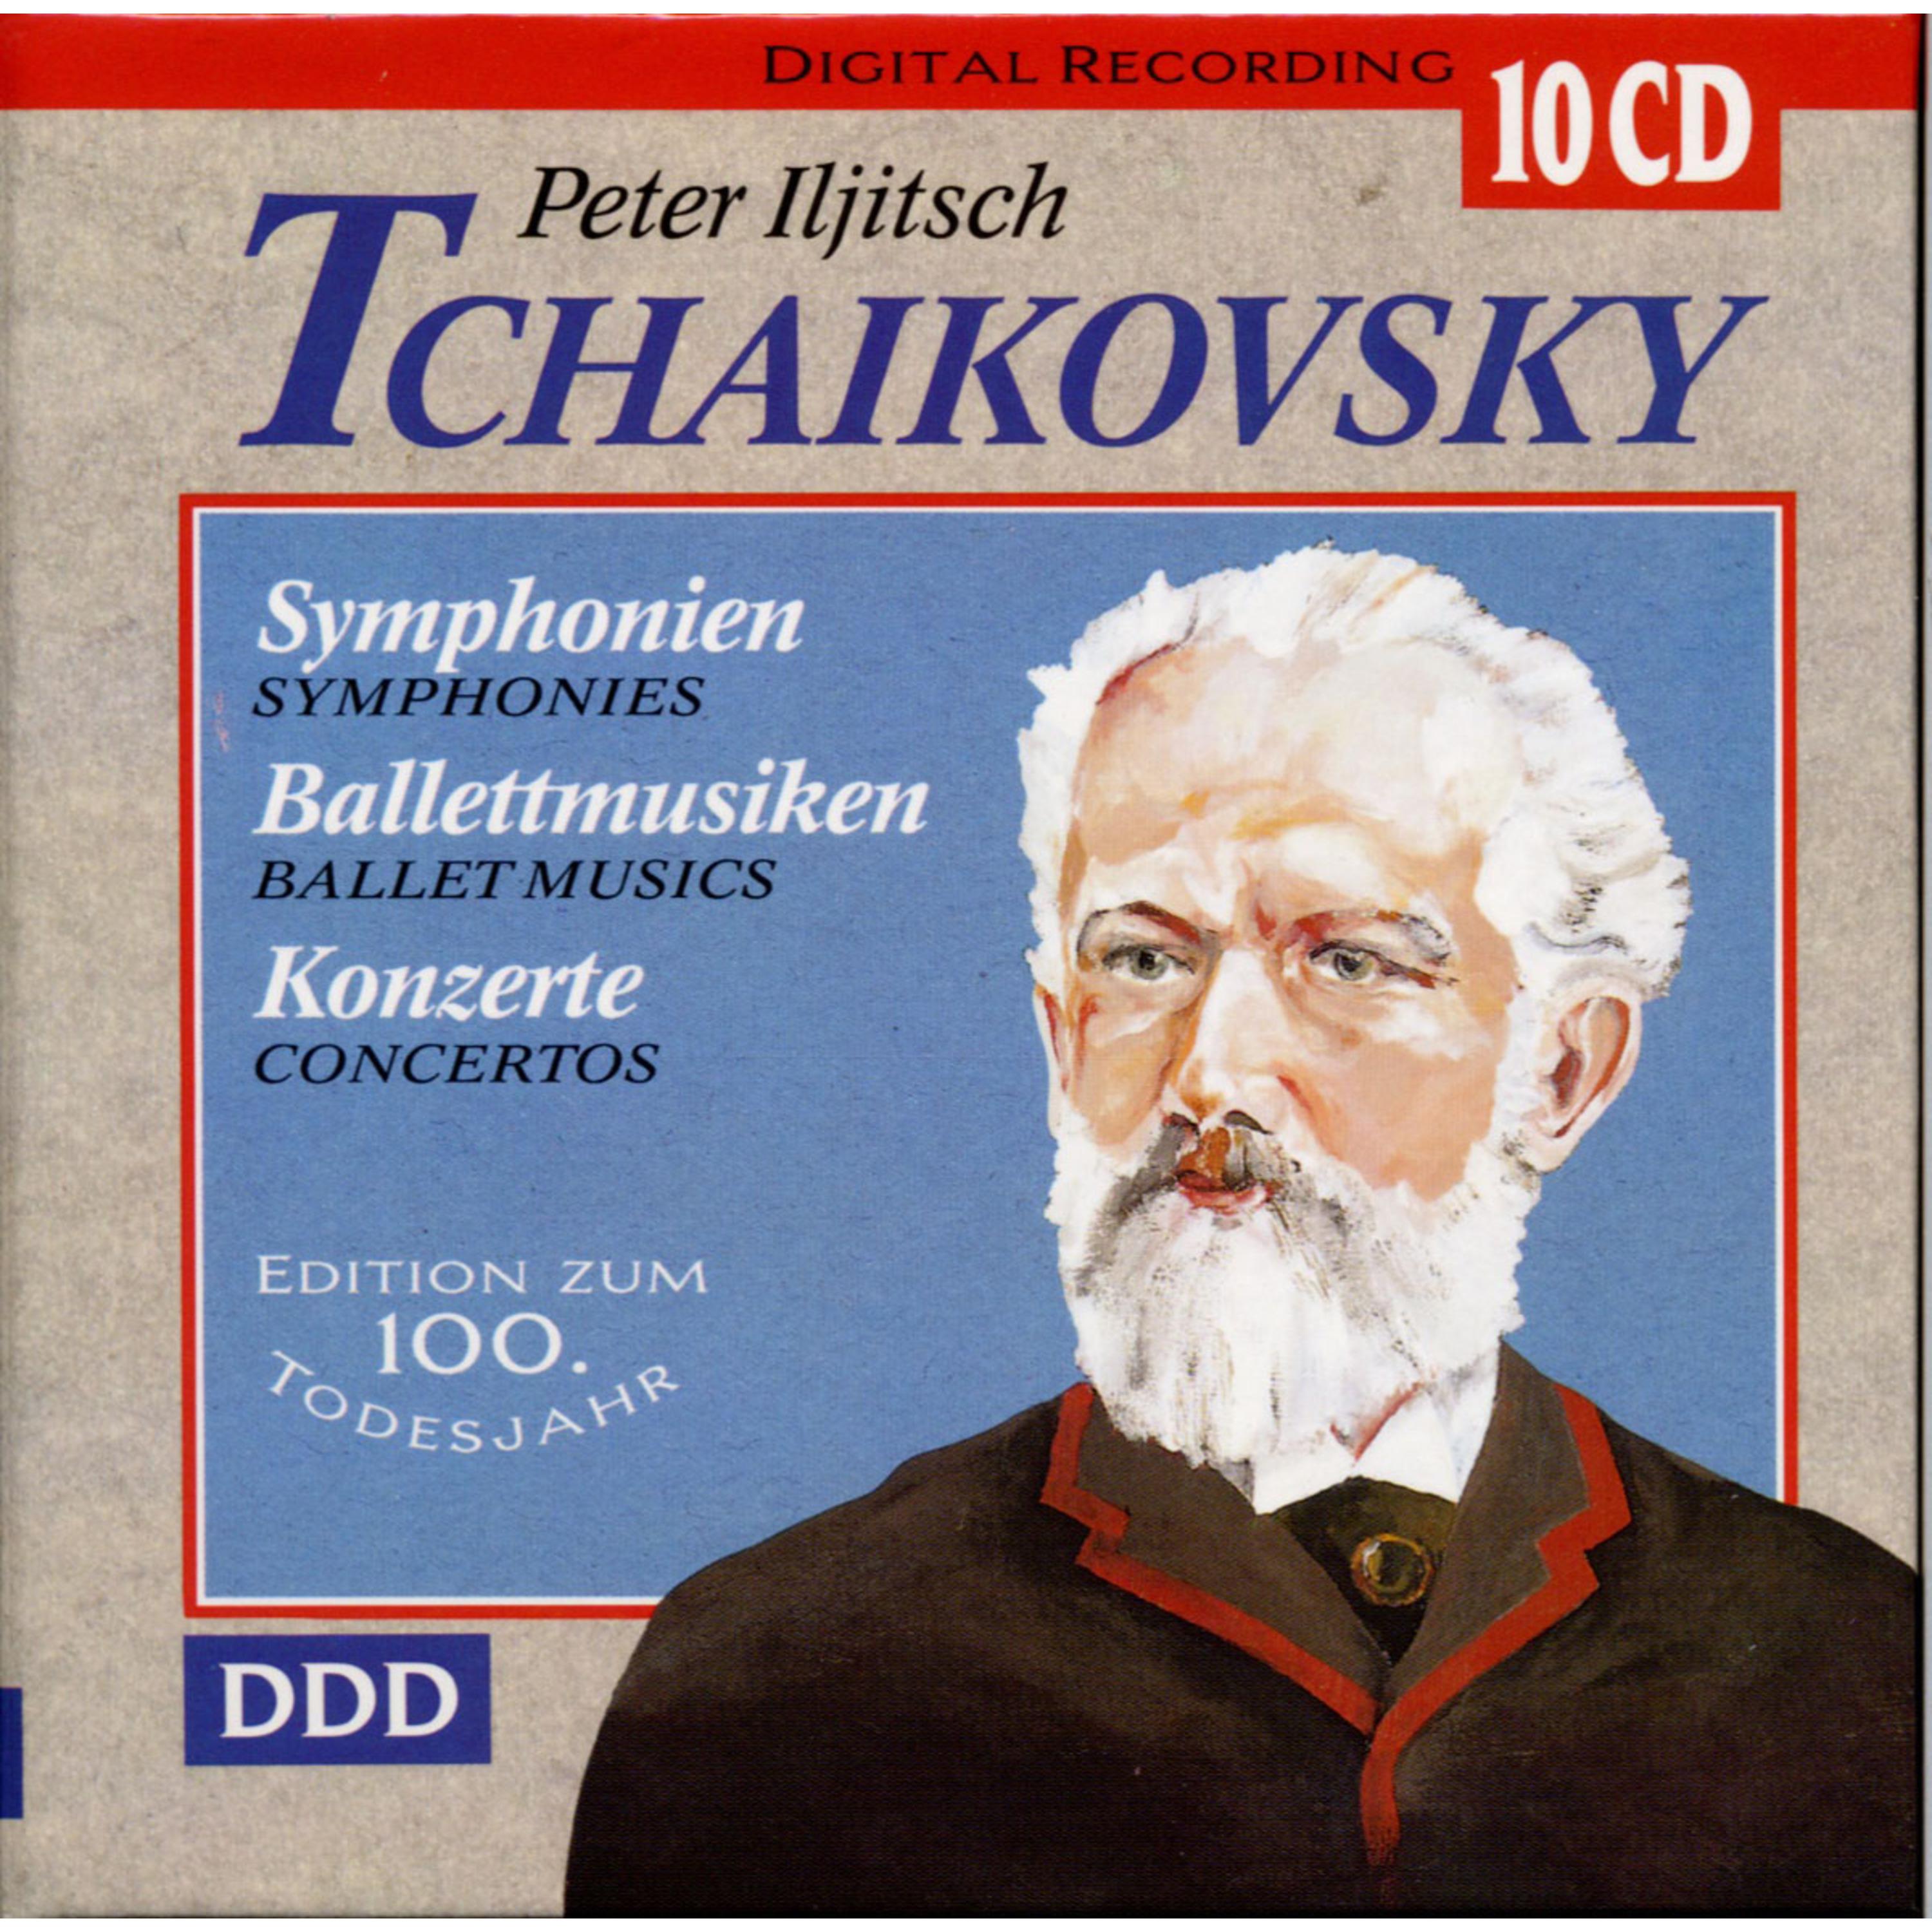 Symphony No.3 in D Major, op. 29 "Polish": II. Alla tedesca - Allegro moderato e semplice